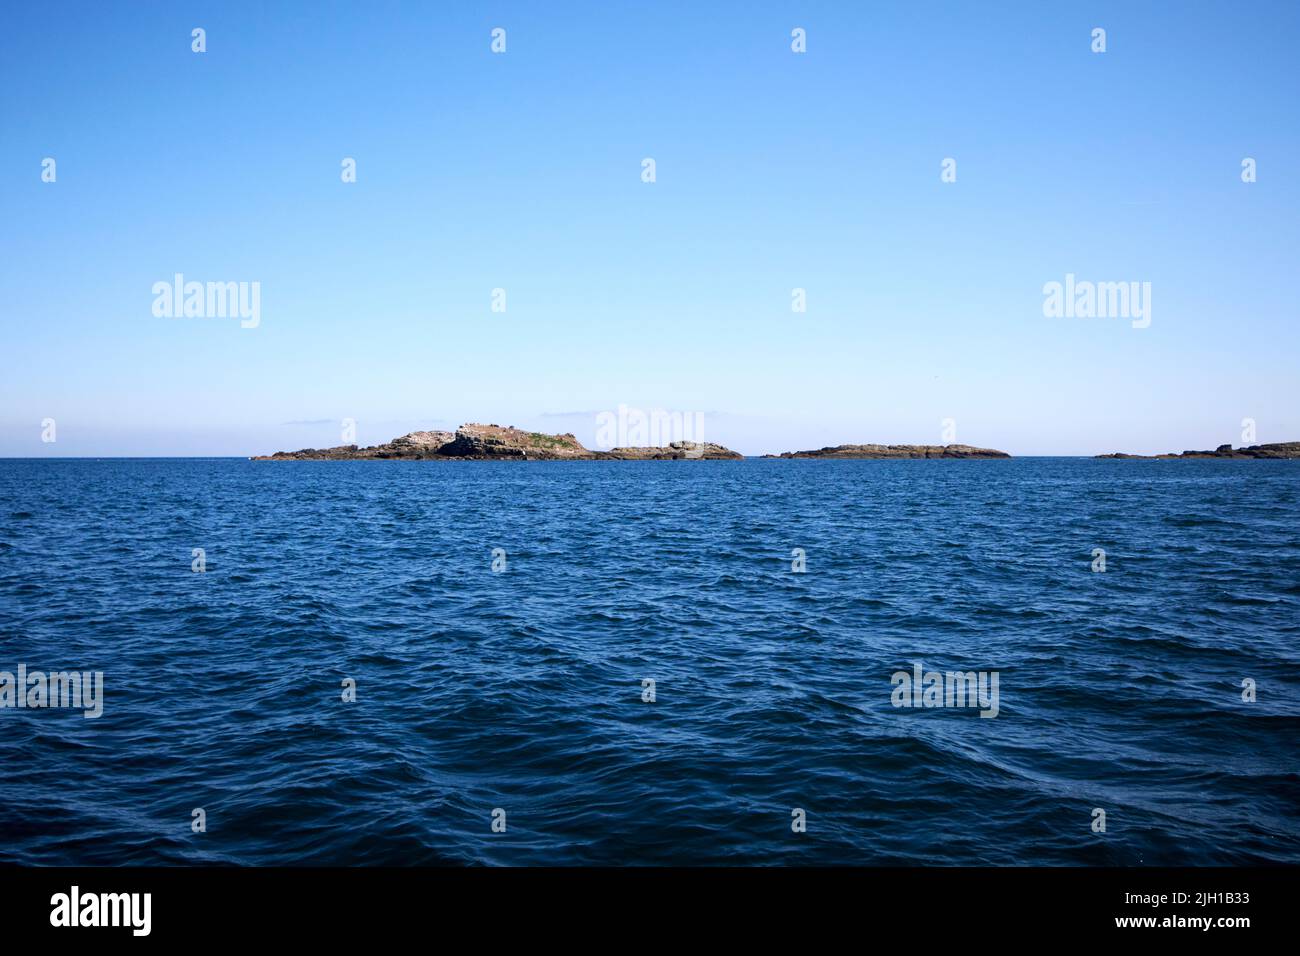 en el mar frente a la costa norte de las islas skerries de irlanda del norte en una mañana de verano Foto de stock